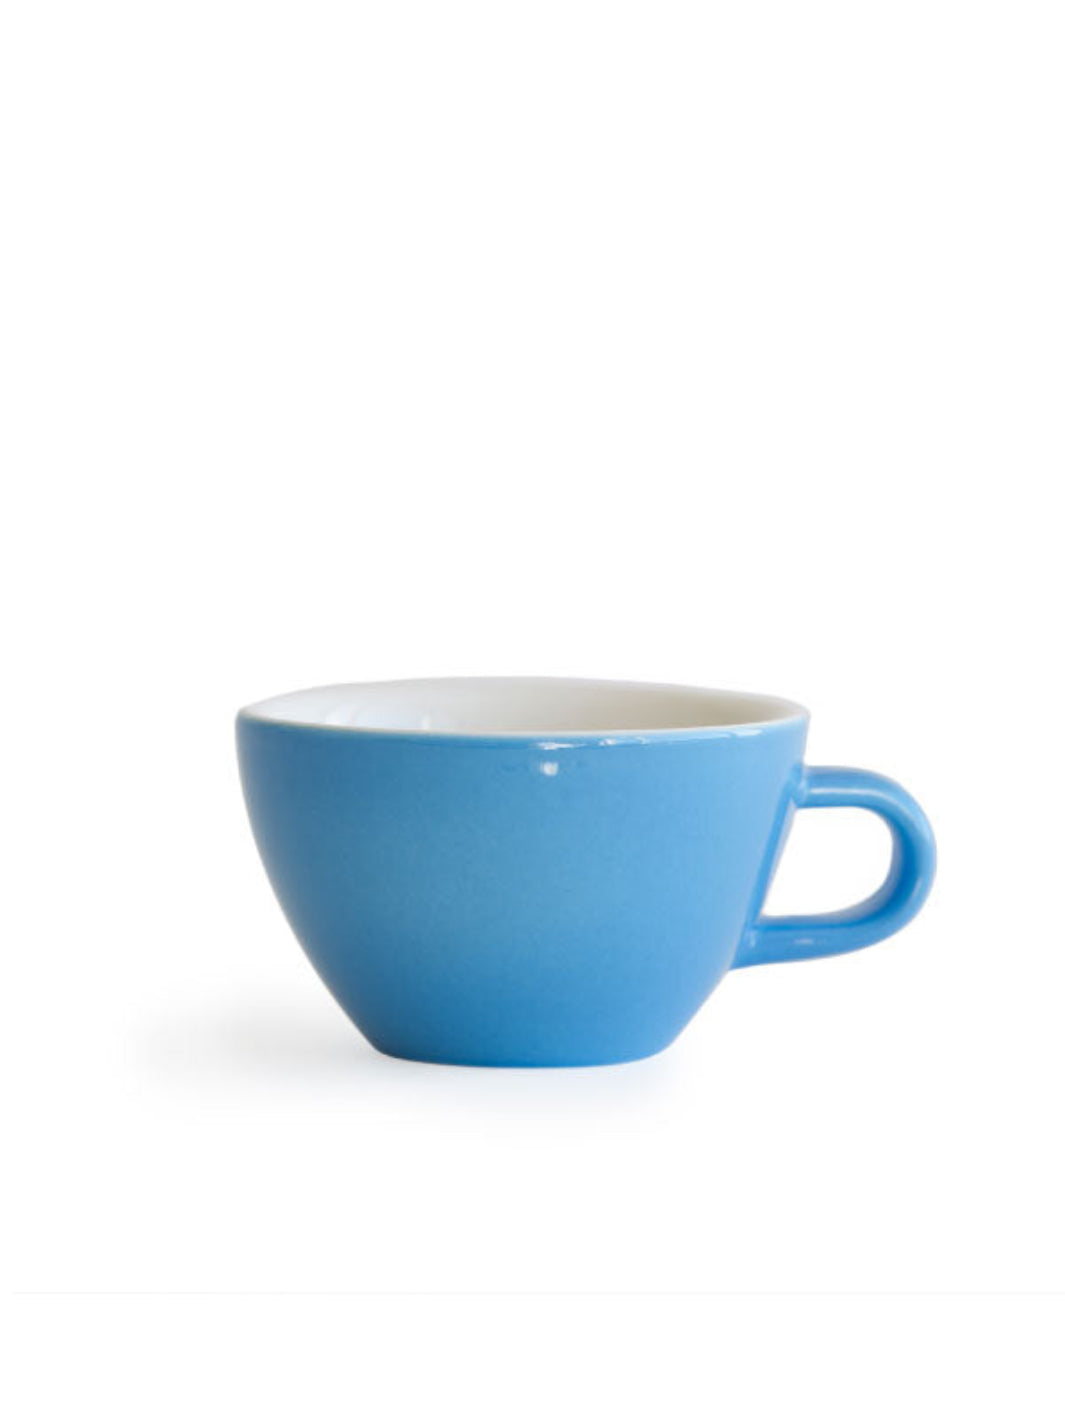 Espresso Cups/Mugs for Sale, cappuccino cups